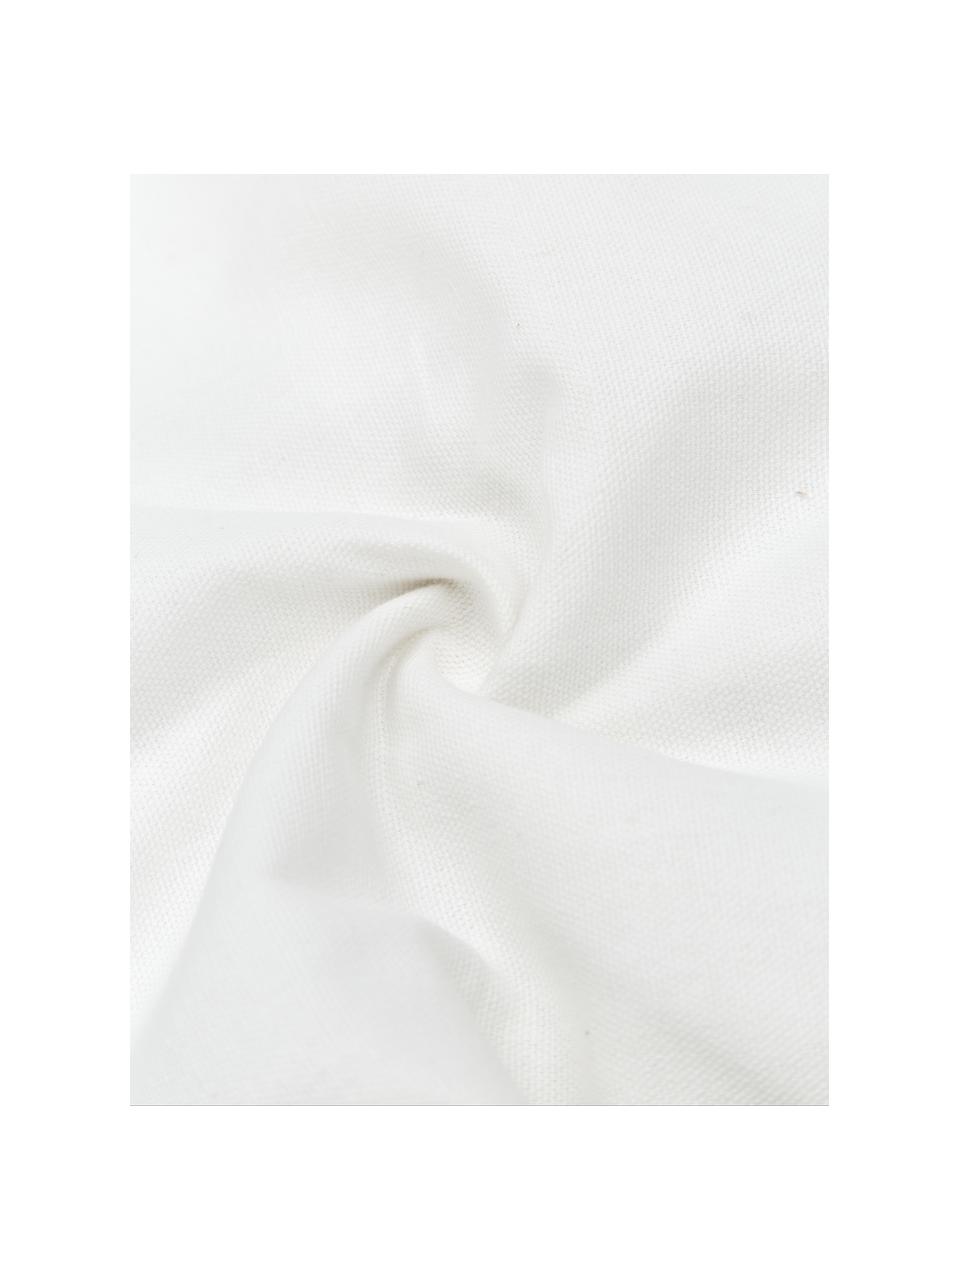 Poszewka na poduszkę z bawełny z chwostami Viale, 100% bawełna, Biały, beżowy, S 40 x D 60 cm